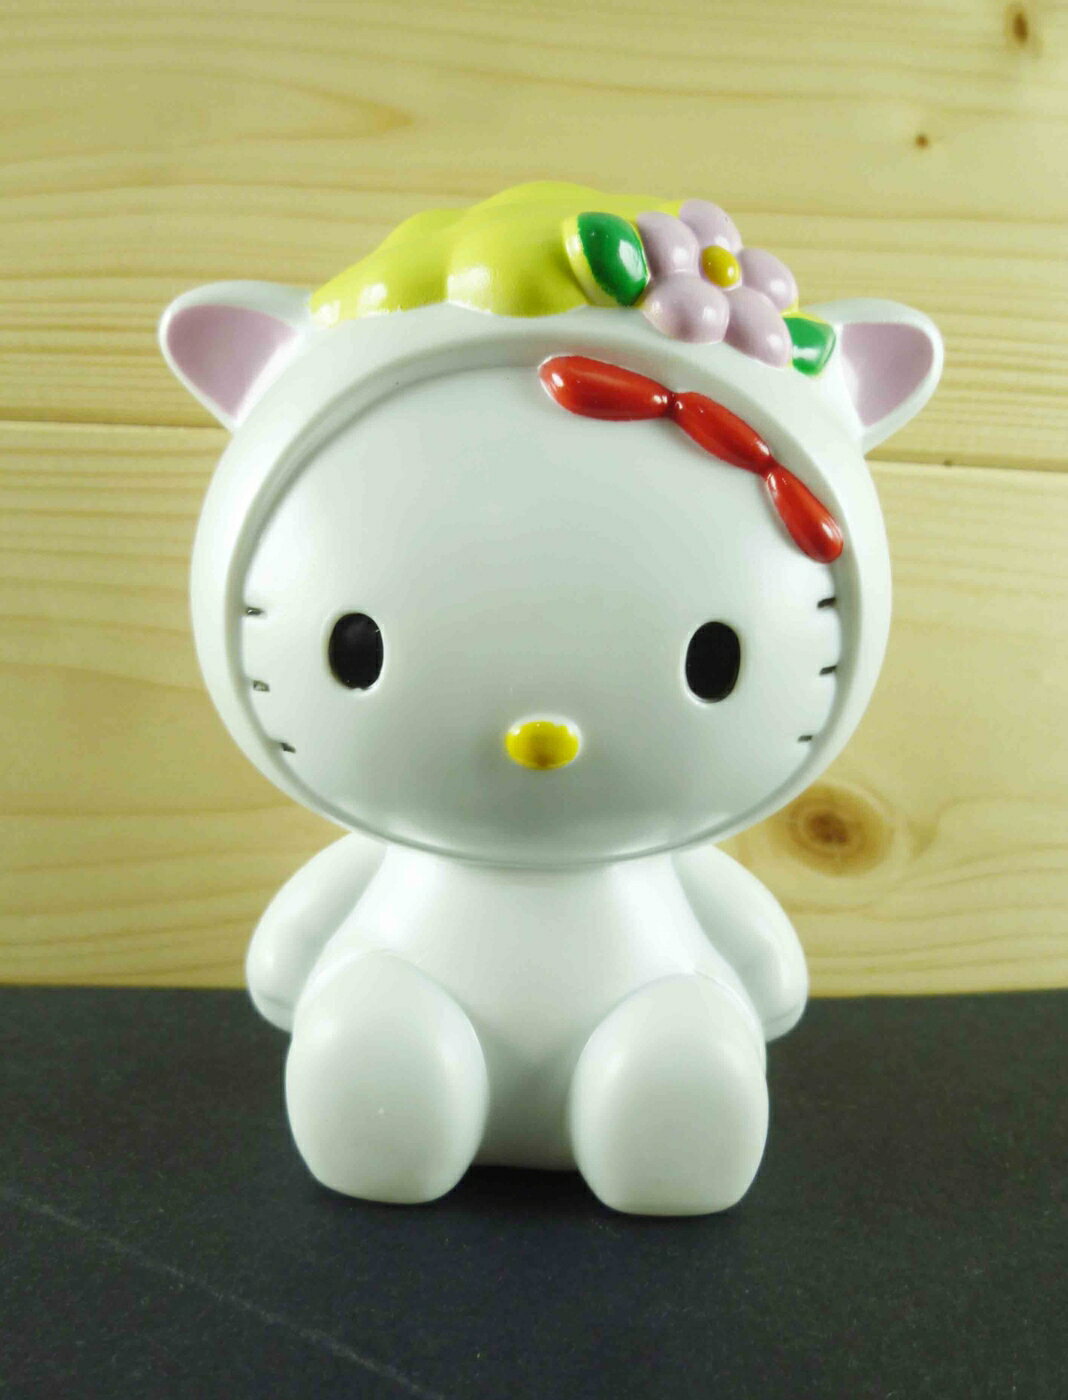 【震撼精品百貨】Hello Kitty 凱蒂貓 造型存錢筒 羊 震撼日式精品百貨